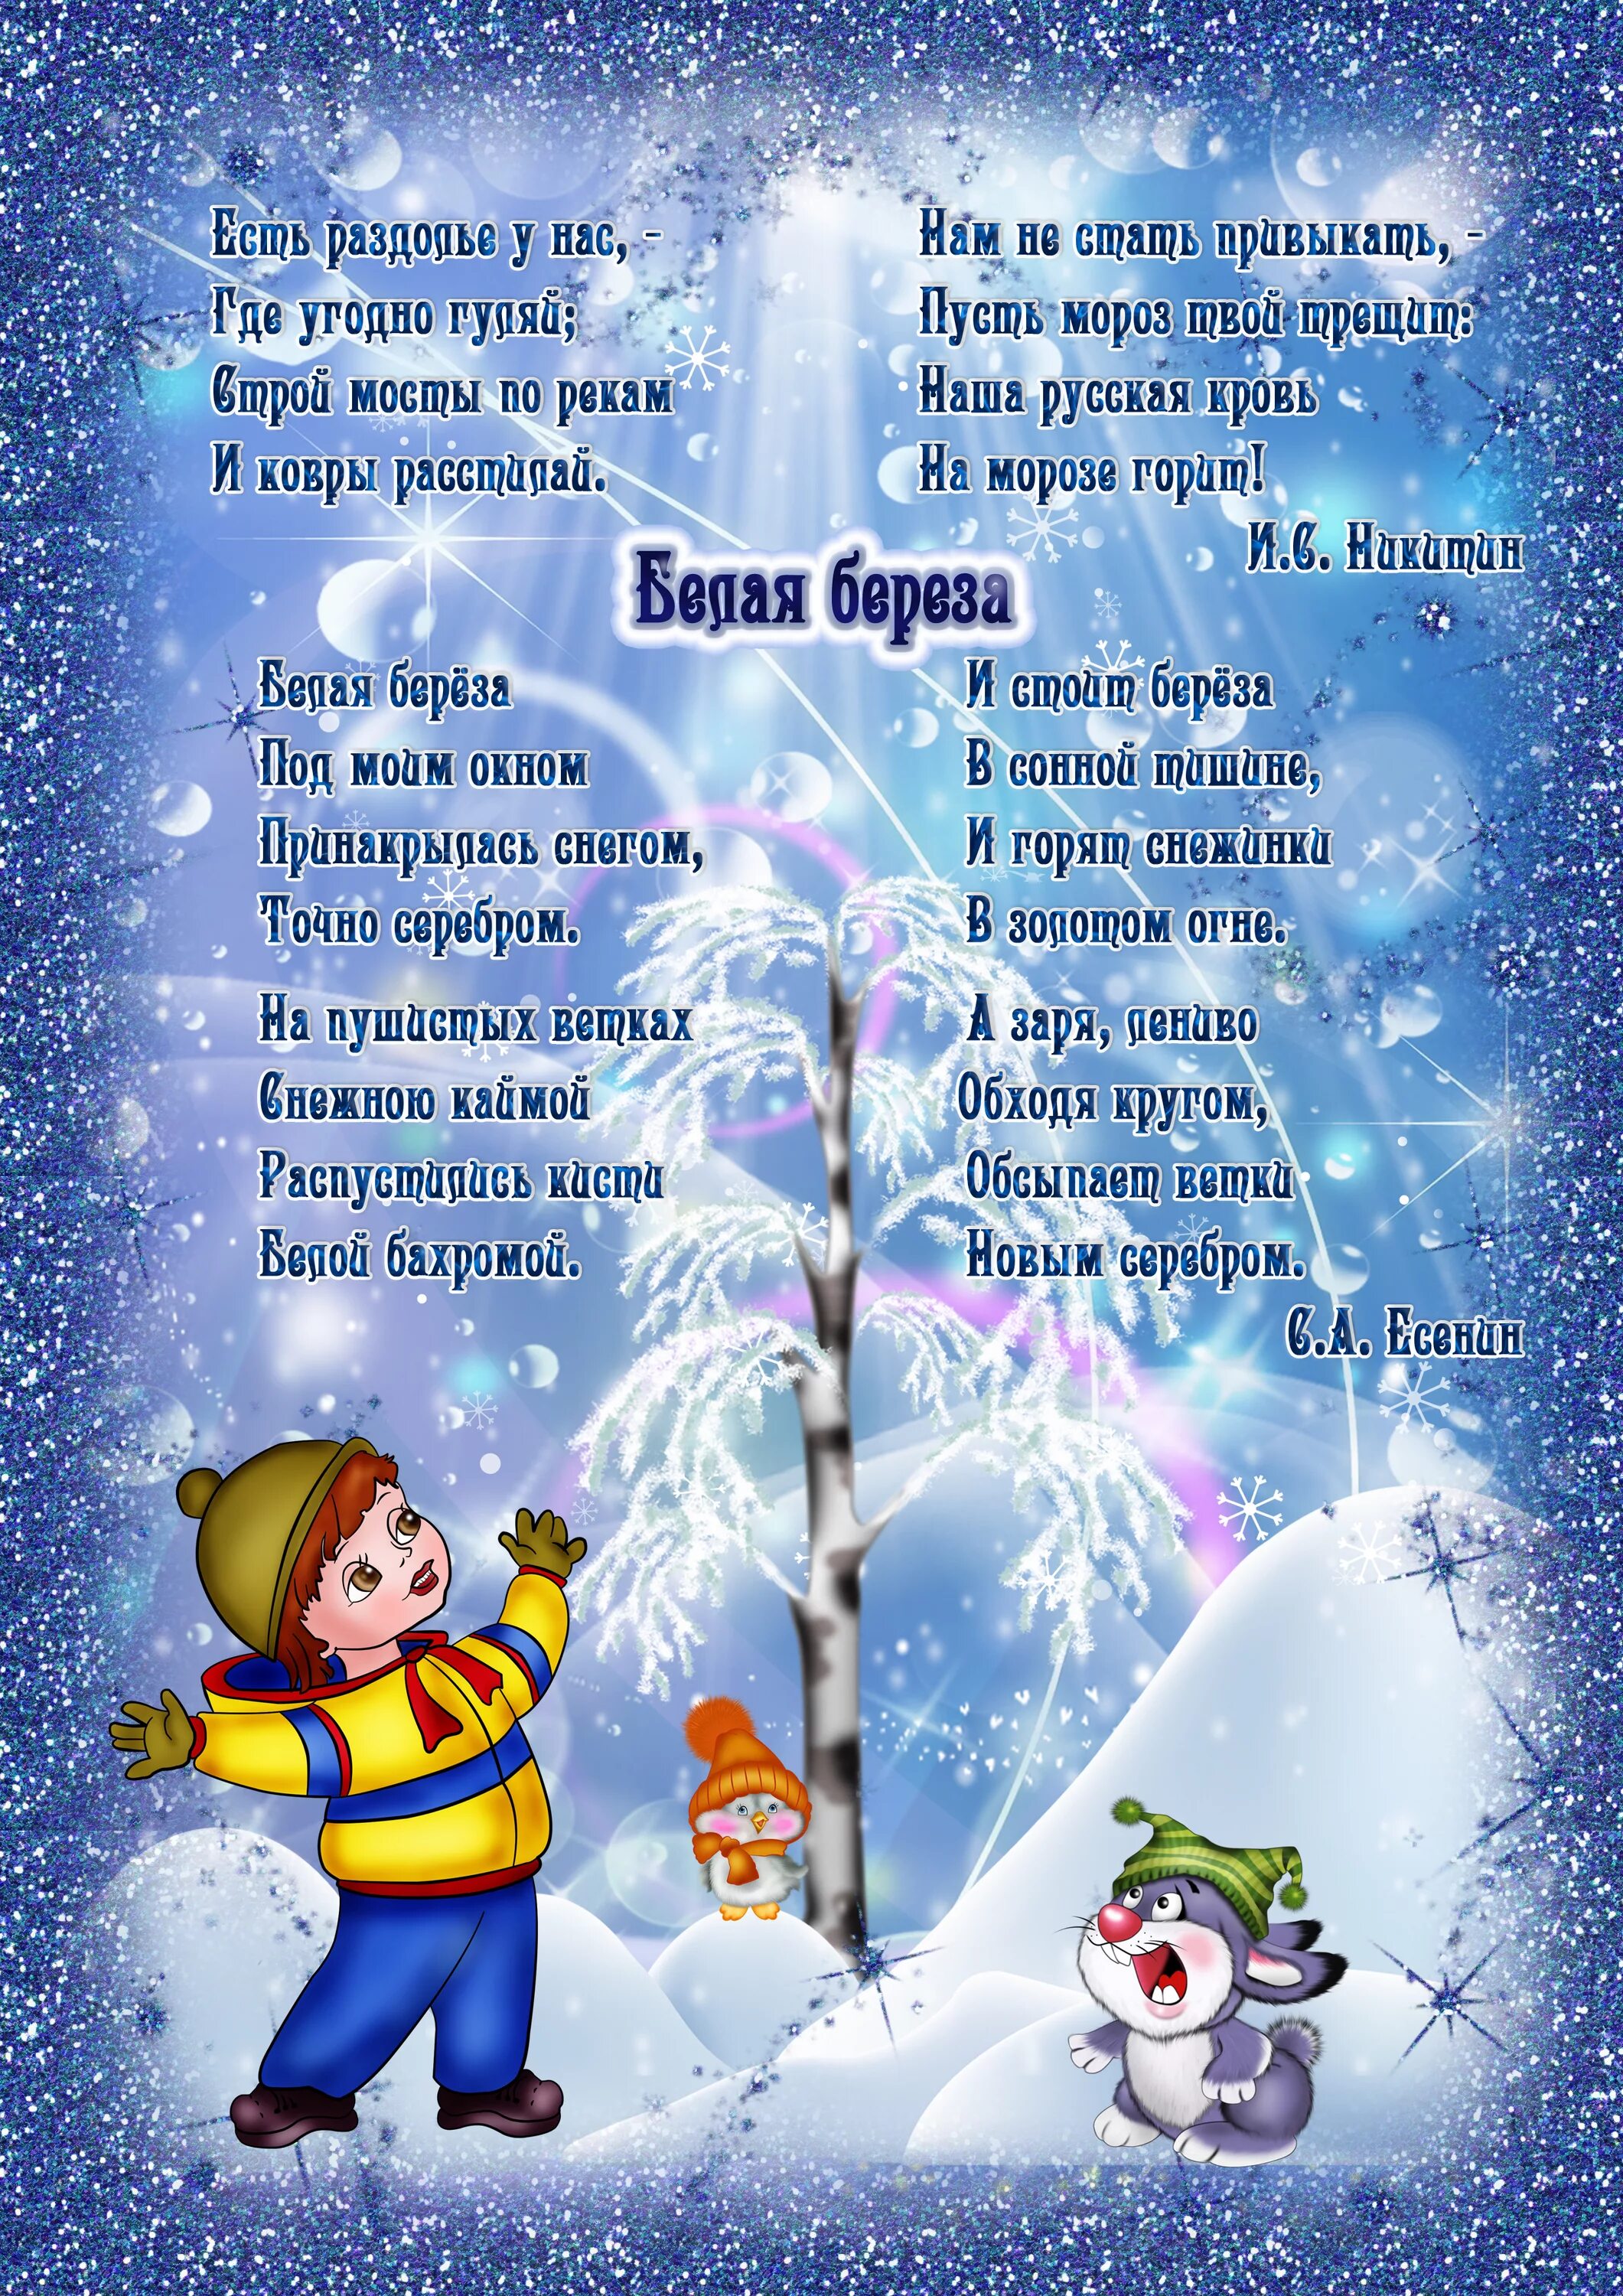 Выучить стихотворение зима. Стихотворение про зиму для детей 6-7 лет для заучивания. Стихи для детей 5 лет для заучивания про зиму. Стихи про зиму для детей 6-7 лет для заучивания. Детские стихи про зиму.